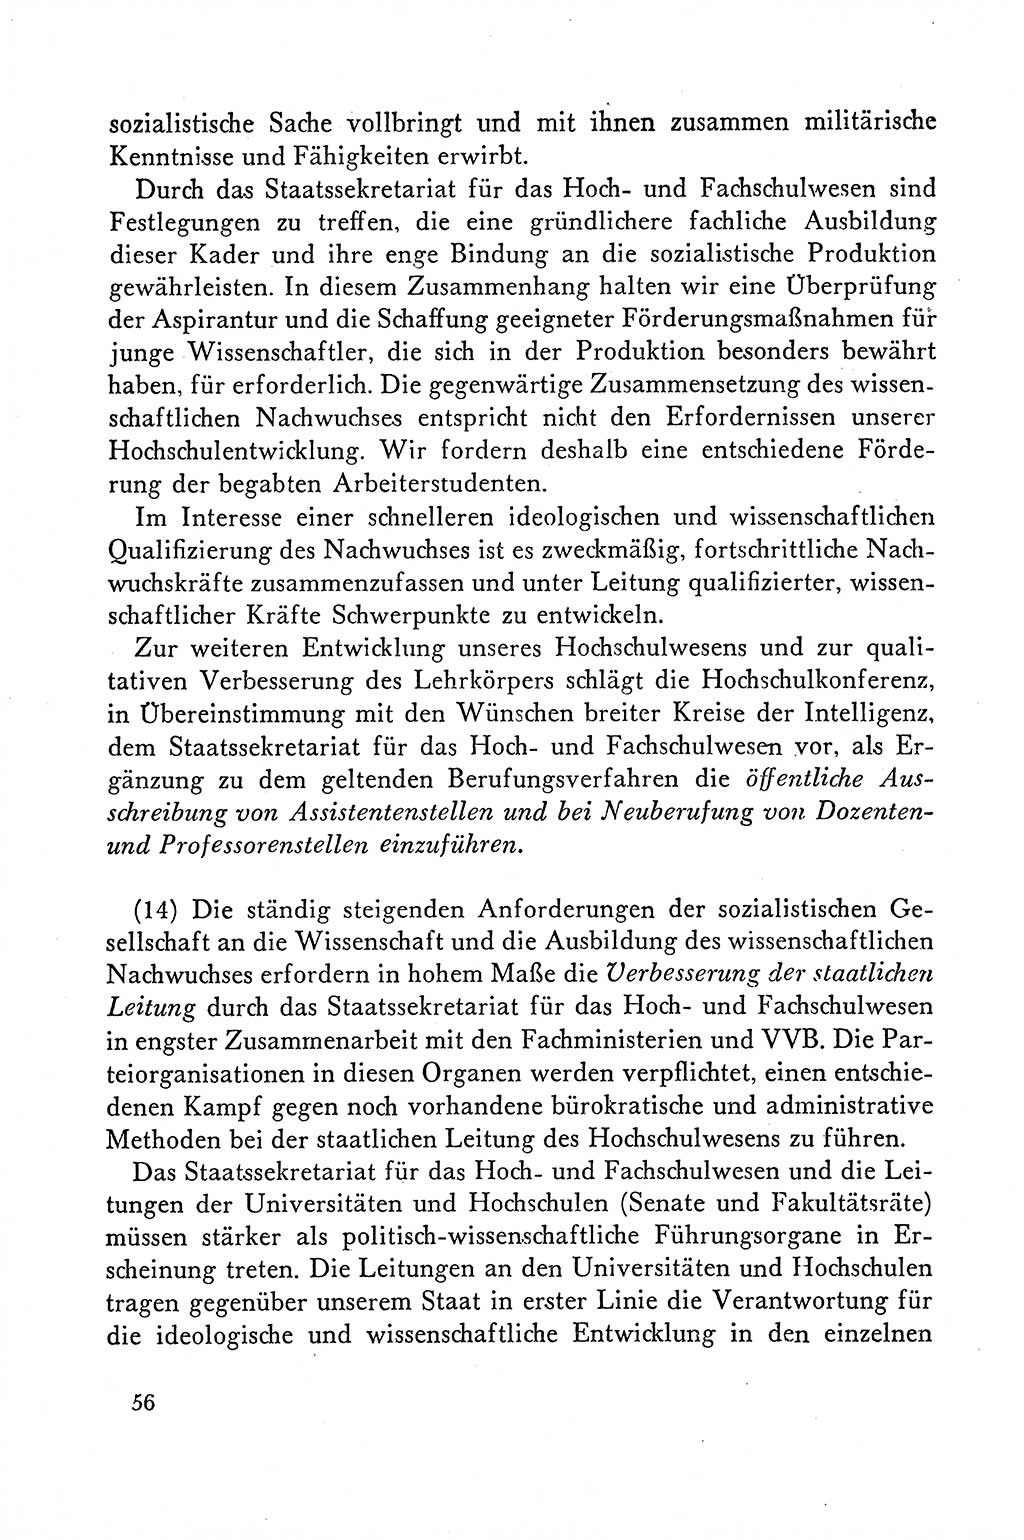 Dokumente der Sozialistischen Einheitspartei Deutschlands (SED) [Deutsche Demokratische Republik (DDR)] 1958-1959, Seite 56 (Dok. SED DDR 1958-1959, S. 56)